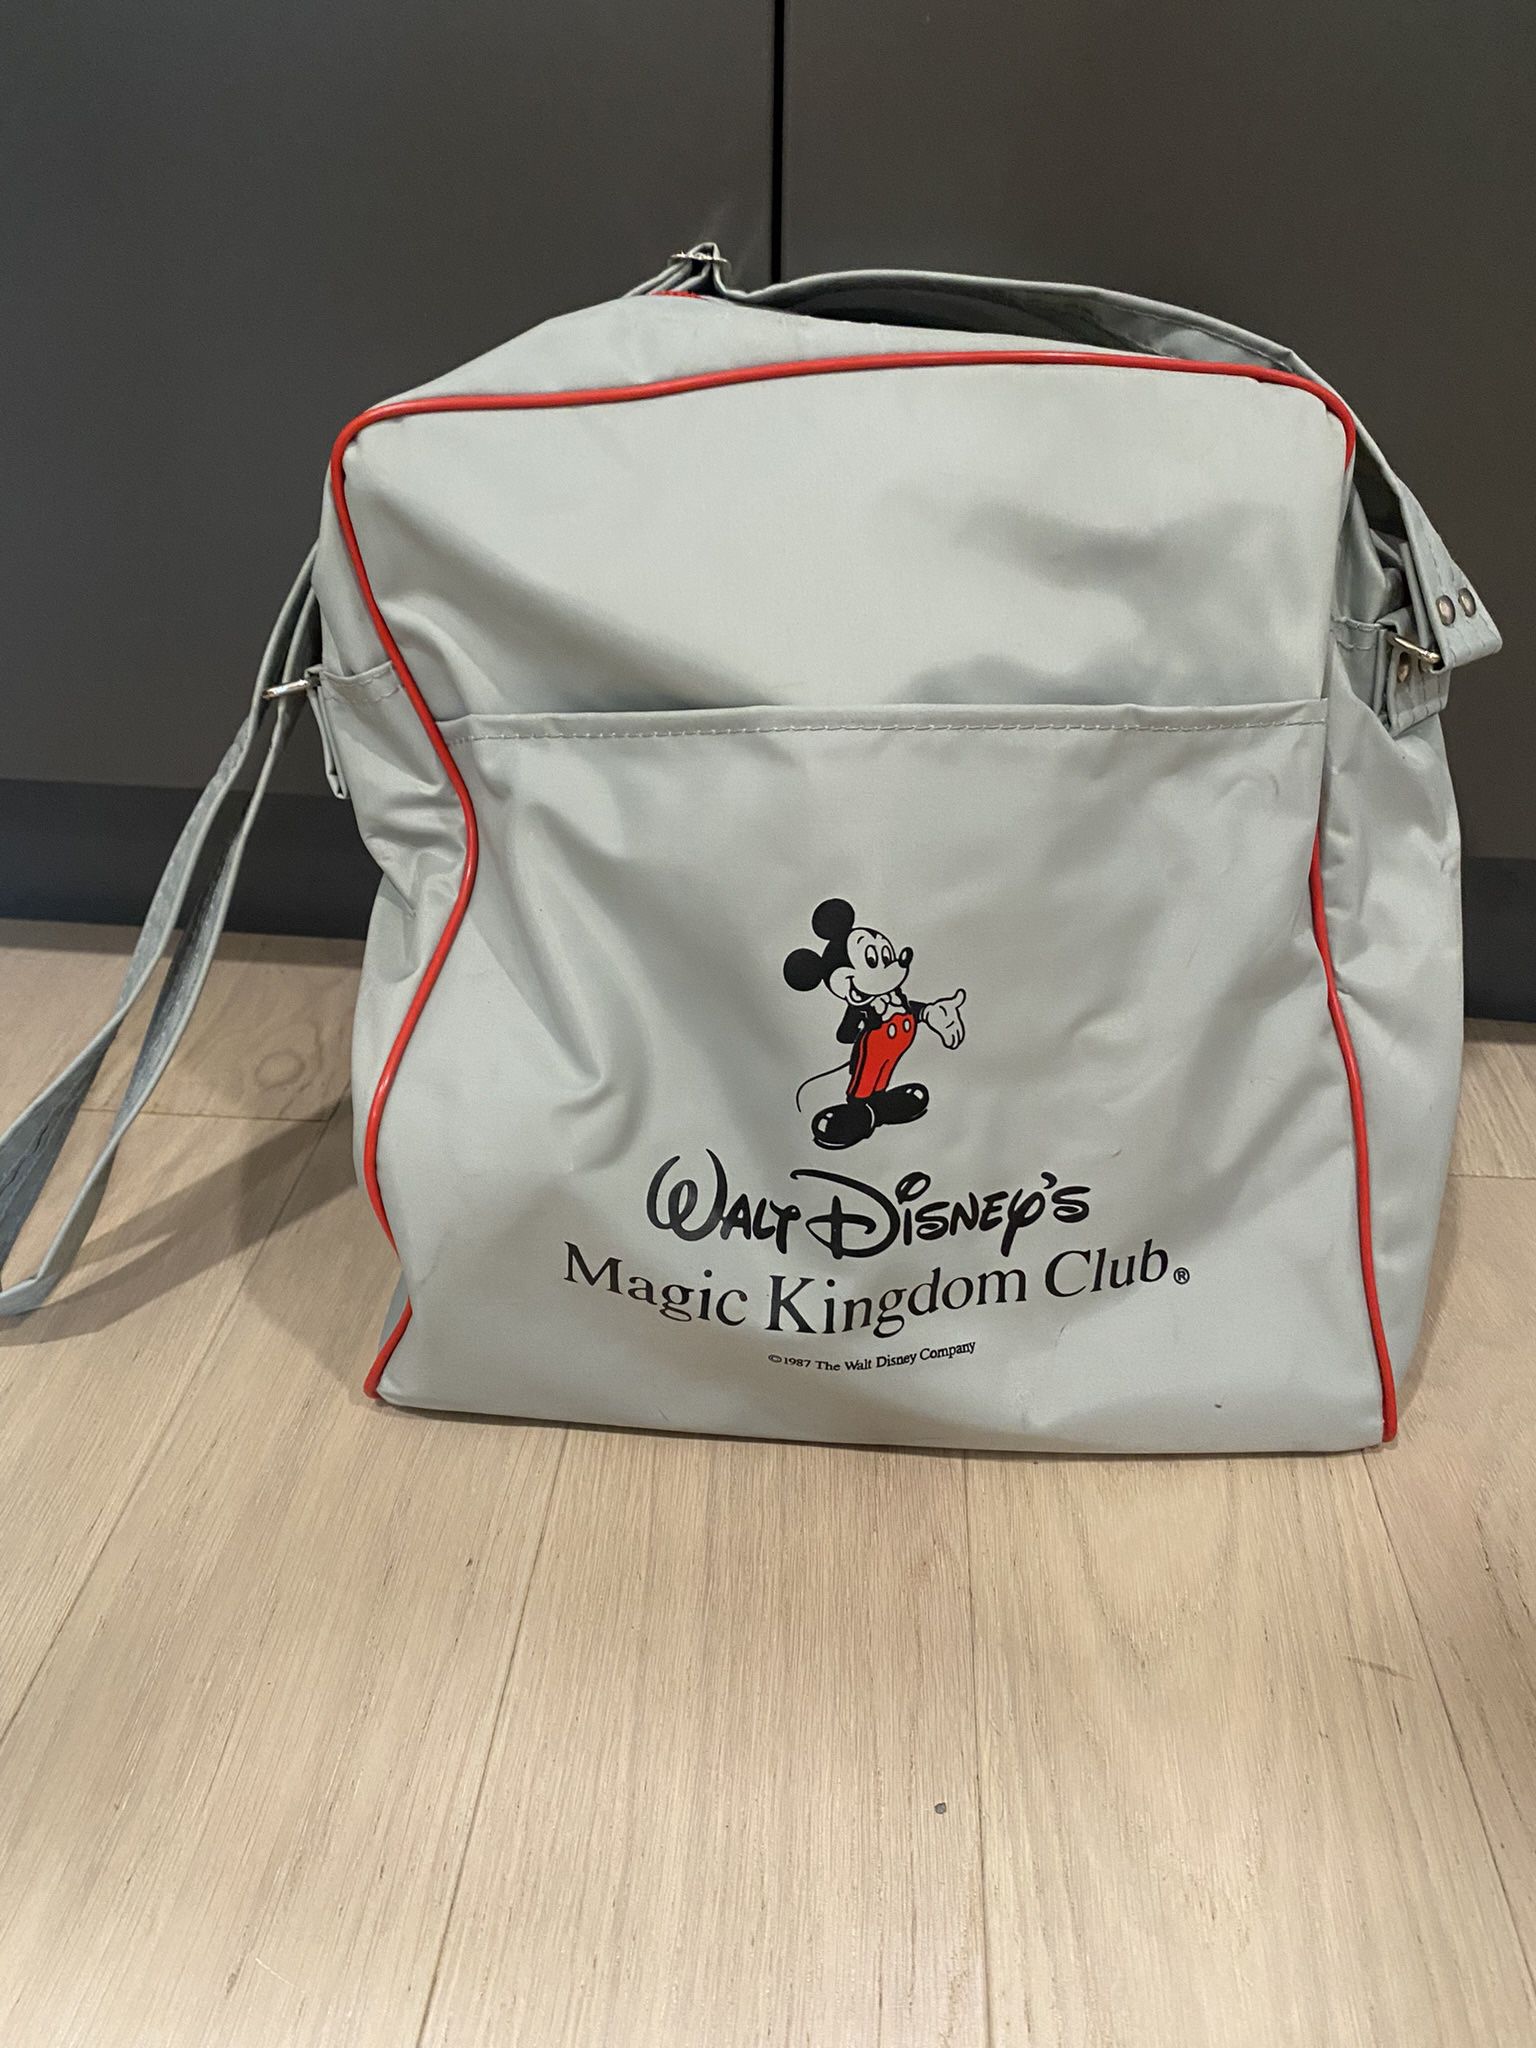 Vintage Disney Tote Bag 